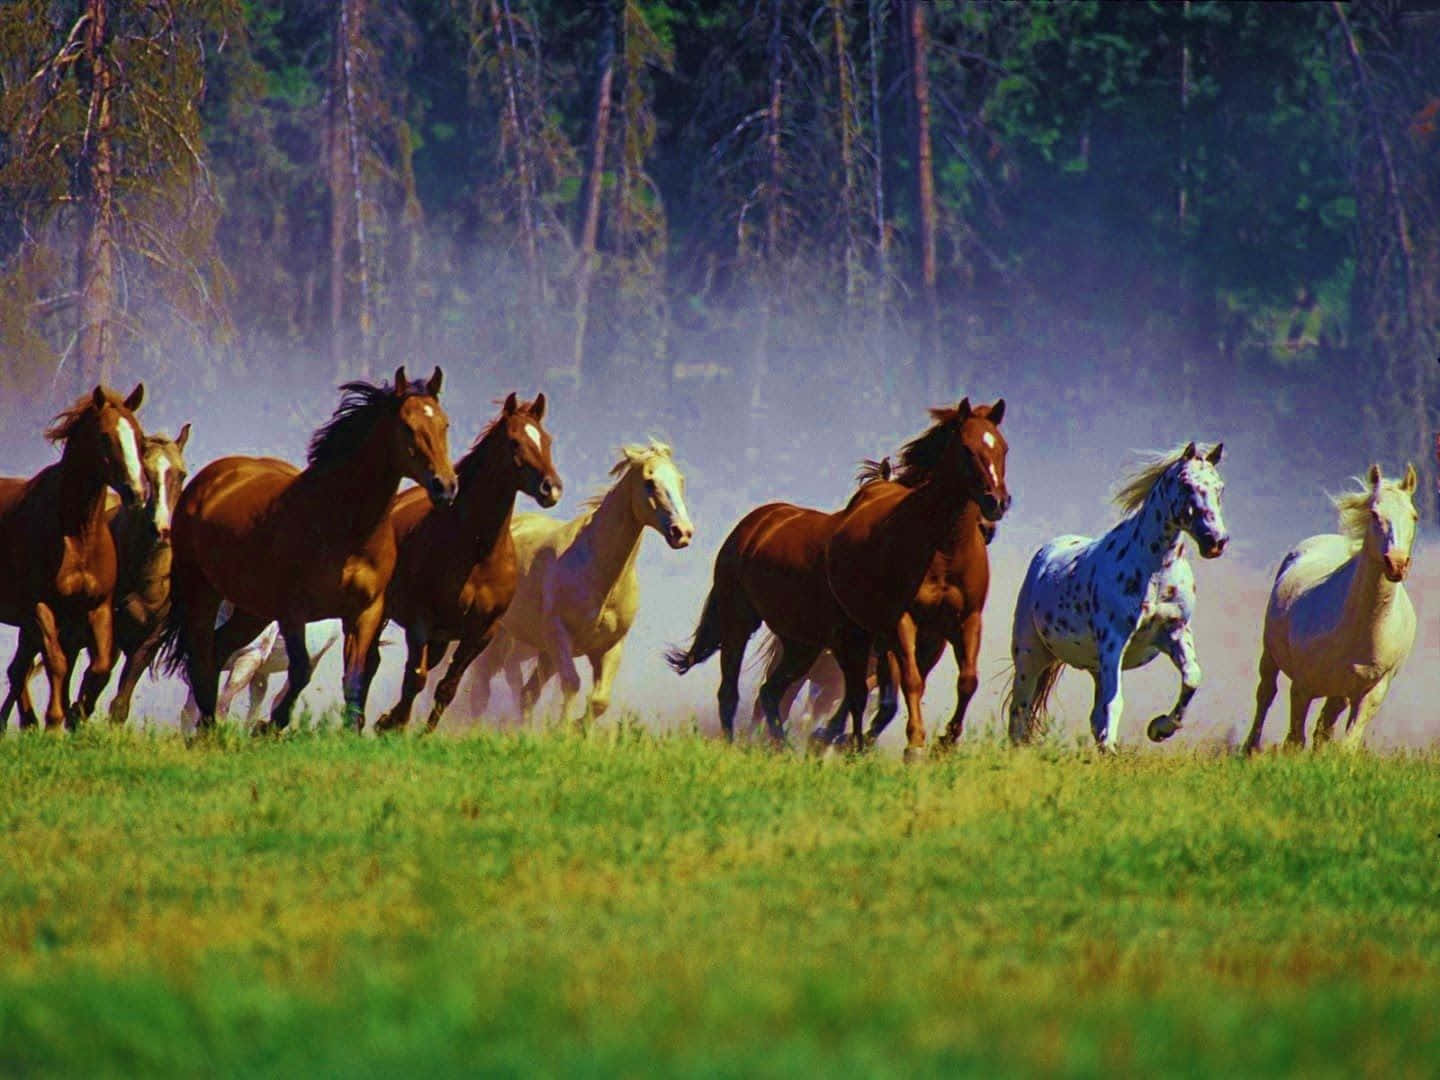 Imagende Un Caballo Mustang Corriendo En Un Campo